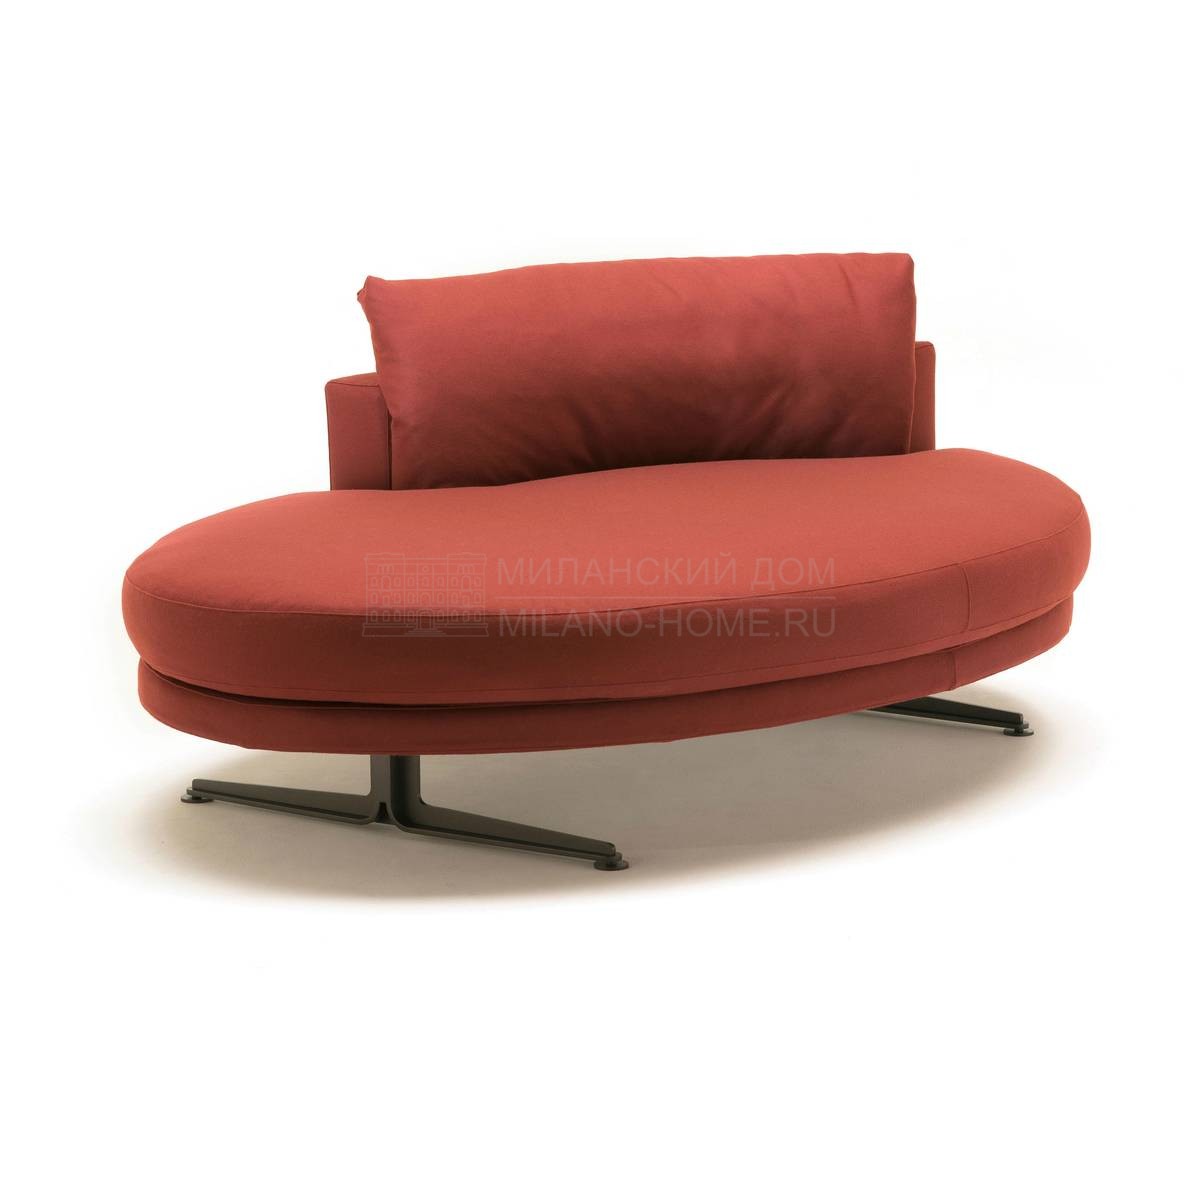 Круглый диван Floyd-Hi sofa round из Италии фабрики LIVING DIVANI